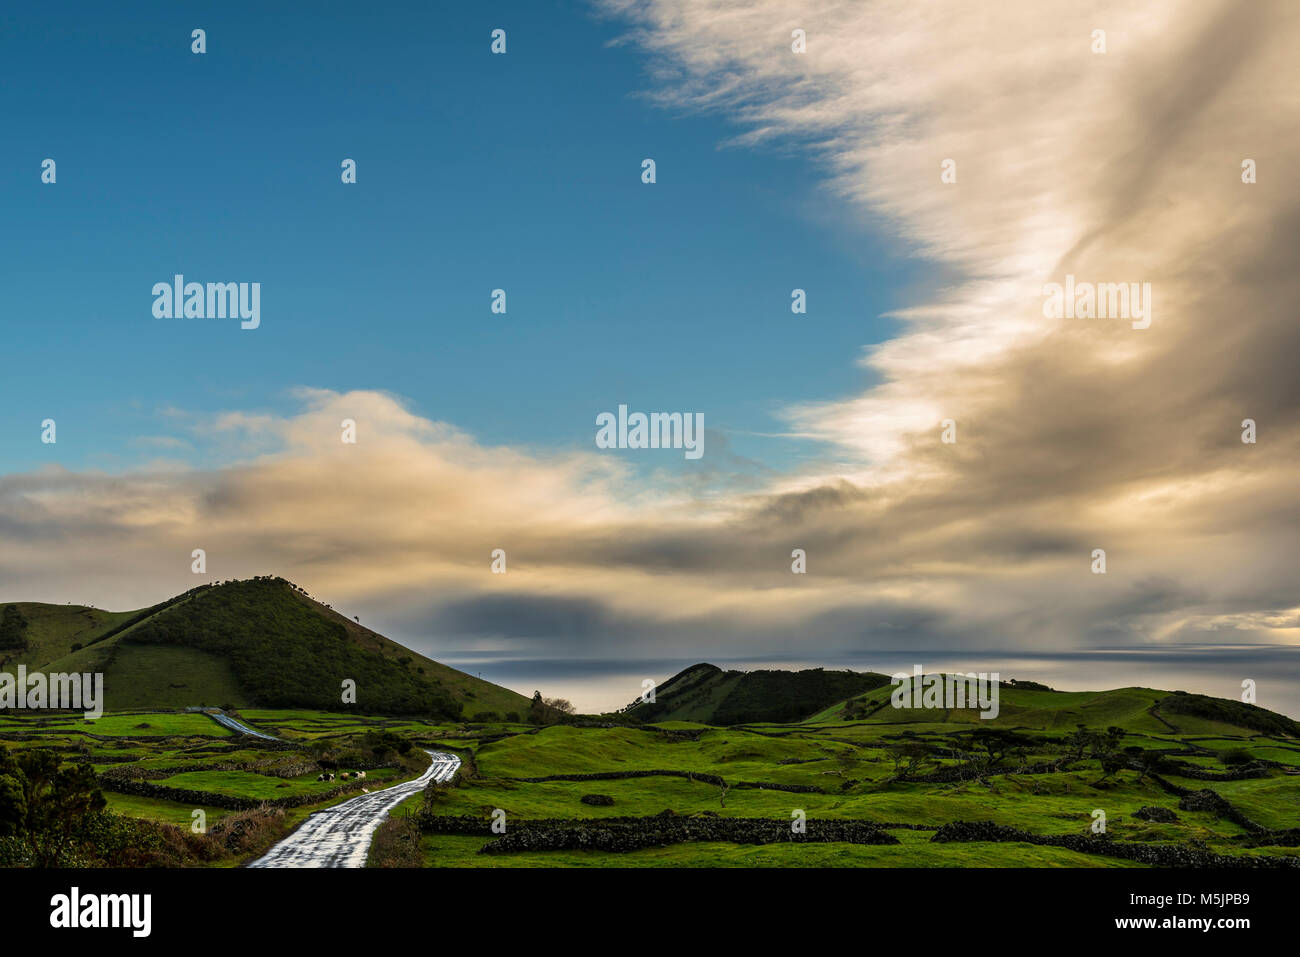 Route à travers la campagne verdoyante et vallonnée,nuageux,île de Pico, Açores, Portugal Banque D'Images